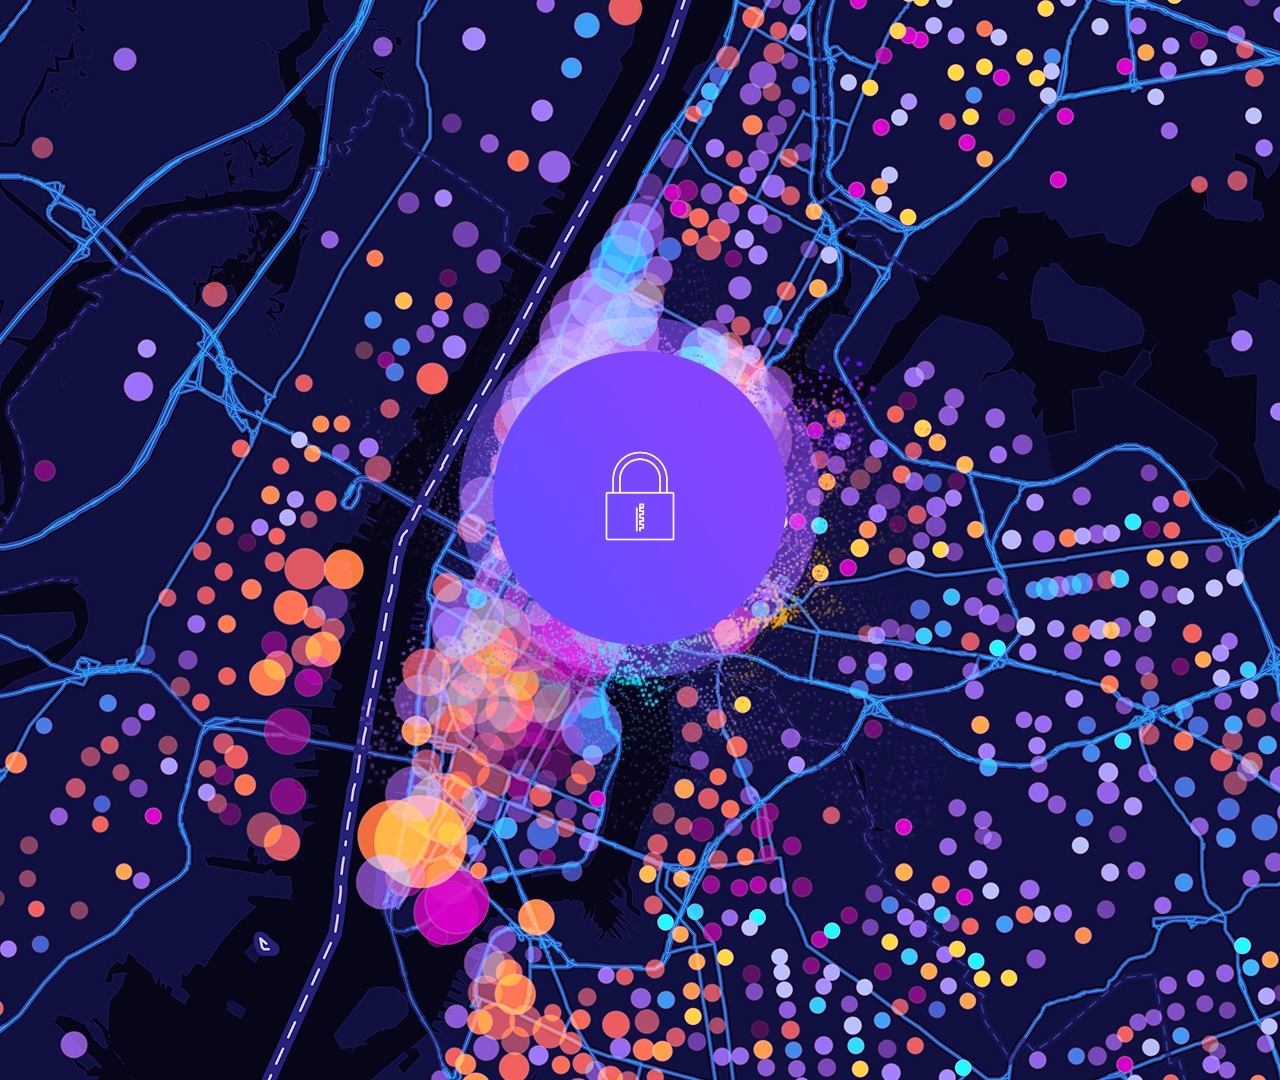 Un'icona di un lucchetto e una mappa stradale digitale con punti dati circolari viola, gialli e rosa